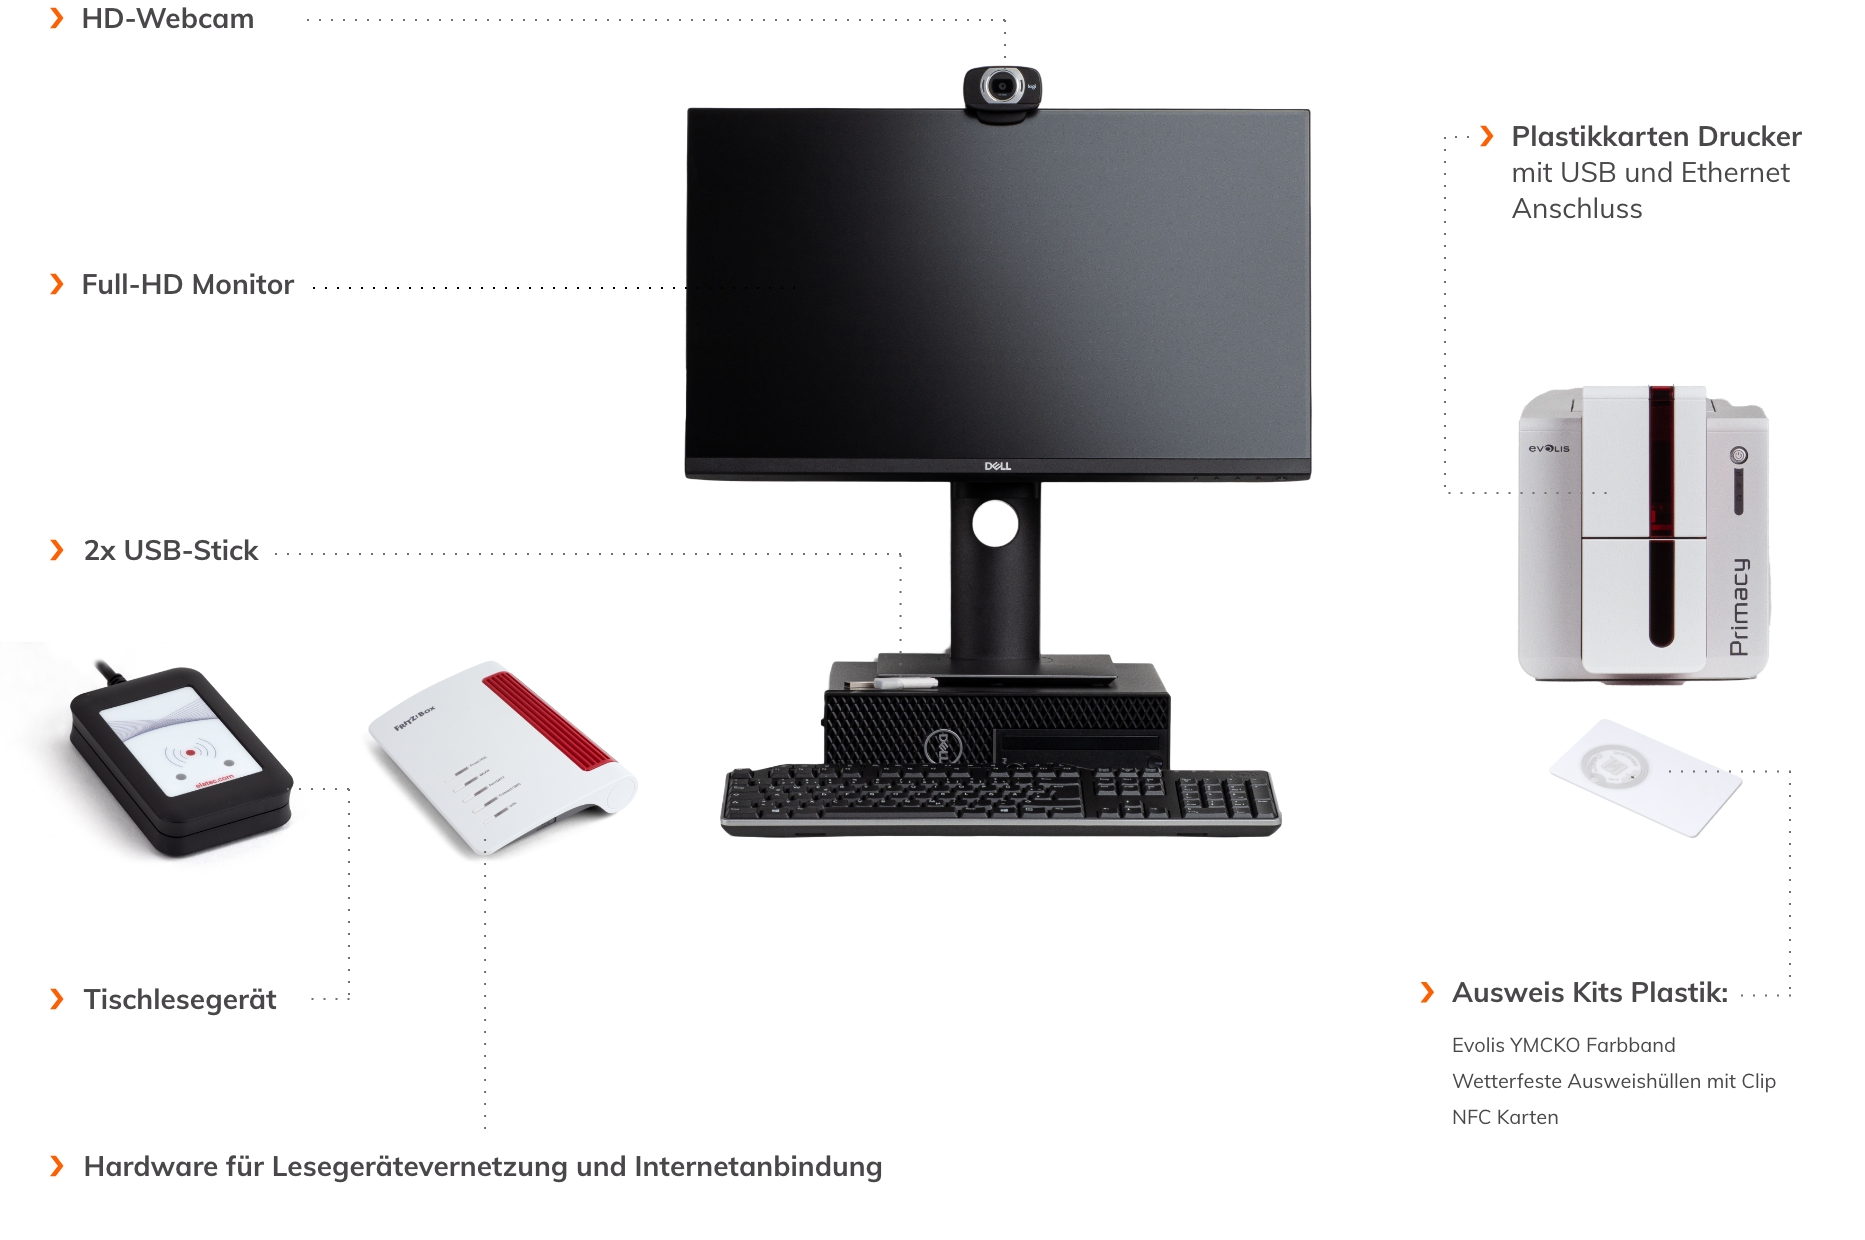 Arbeitsplatzausstattung: HD-Webcam, Full-HD-Monitor, 2x USB-Sticks, Tischlesegerät, Hardware für Lesegerätevernetzung und Internetanbindung, Ausweis Kits Plastik und Plastikkarten-Drucker